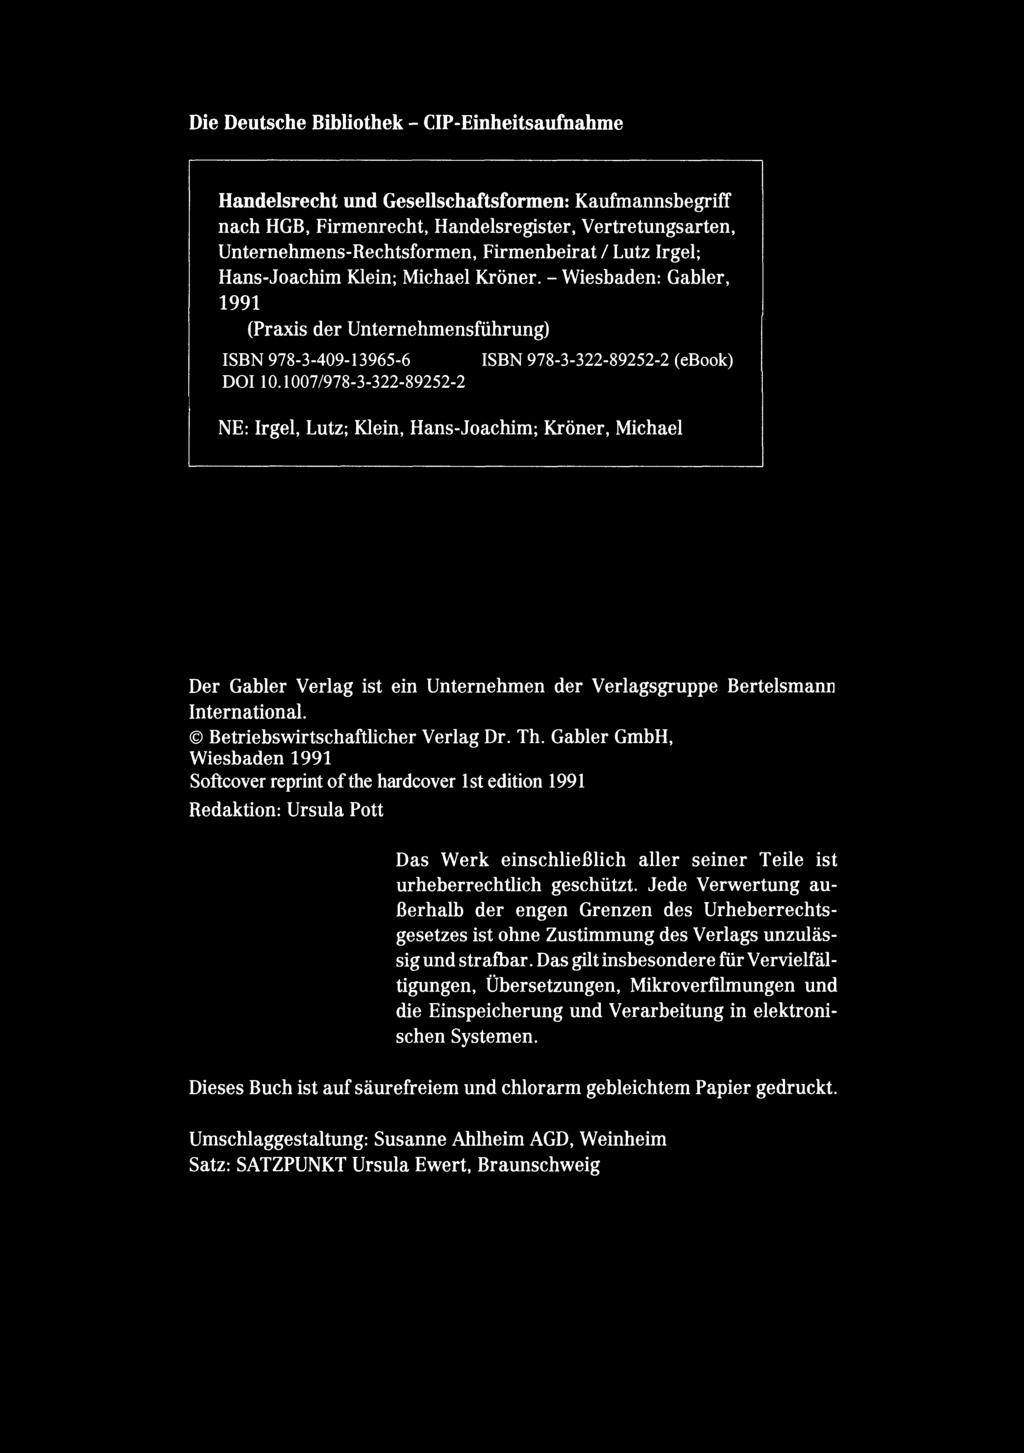 Die Deutsche Bibliothek - CIP-Einheitsaufnahme Handelsrecht und Gesellschaftsformen: Kaufmannsbegriff nach HGB. Firmenrecht. Handelsregister. Vertretungsarten. Unternehmens-Rechtsformen.